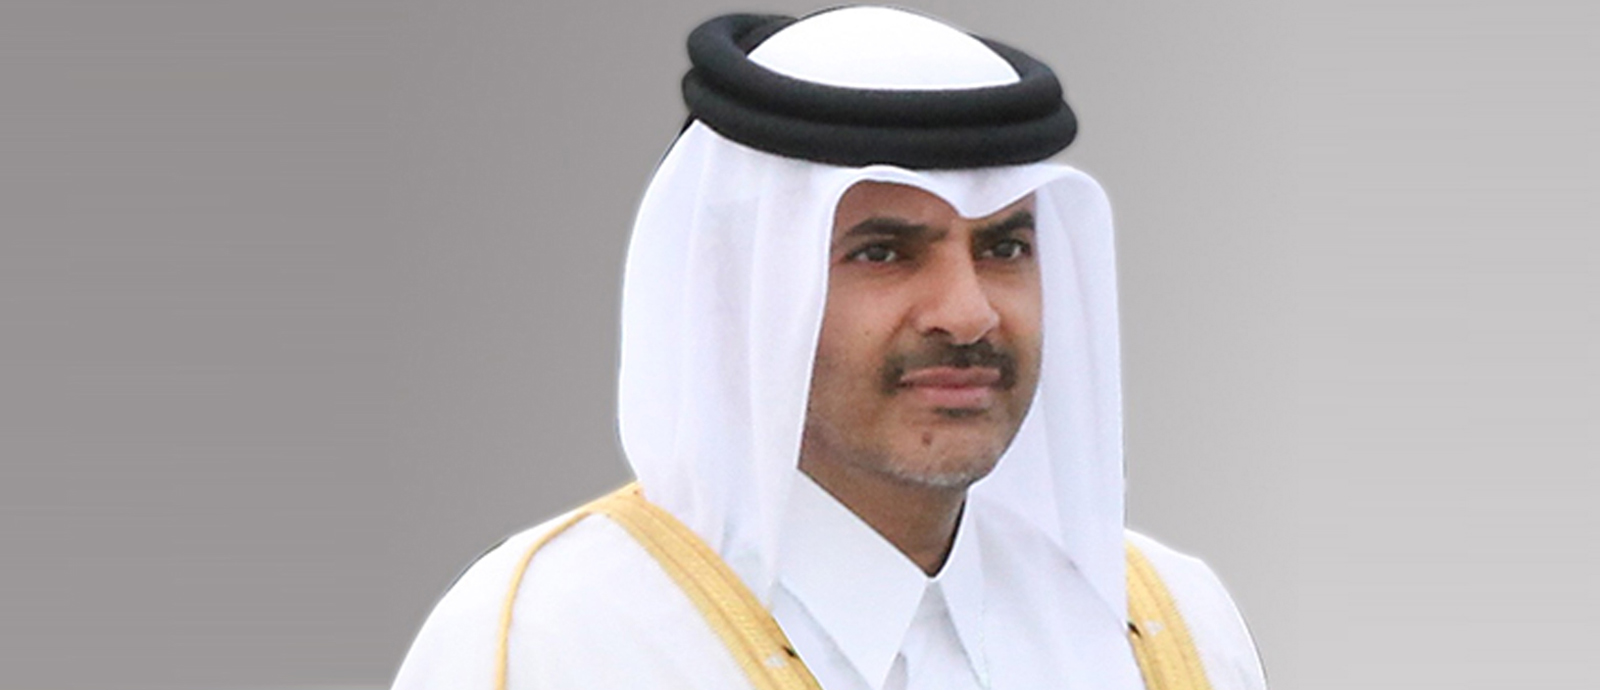 HE Prime Minister and Minister of Interior Sheikh Khalid bin Khalifa bin Abdulaziz Al-Thani